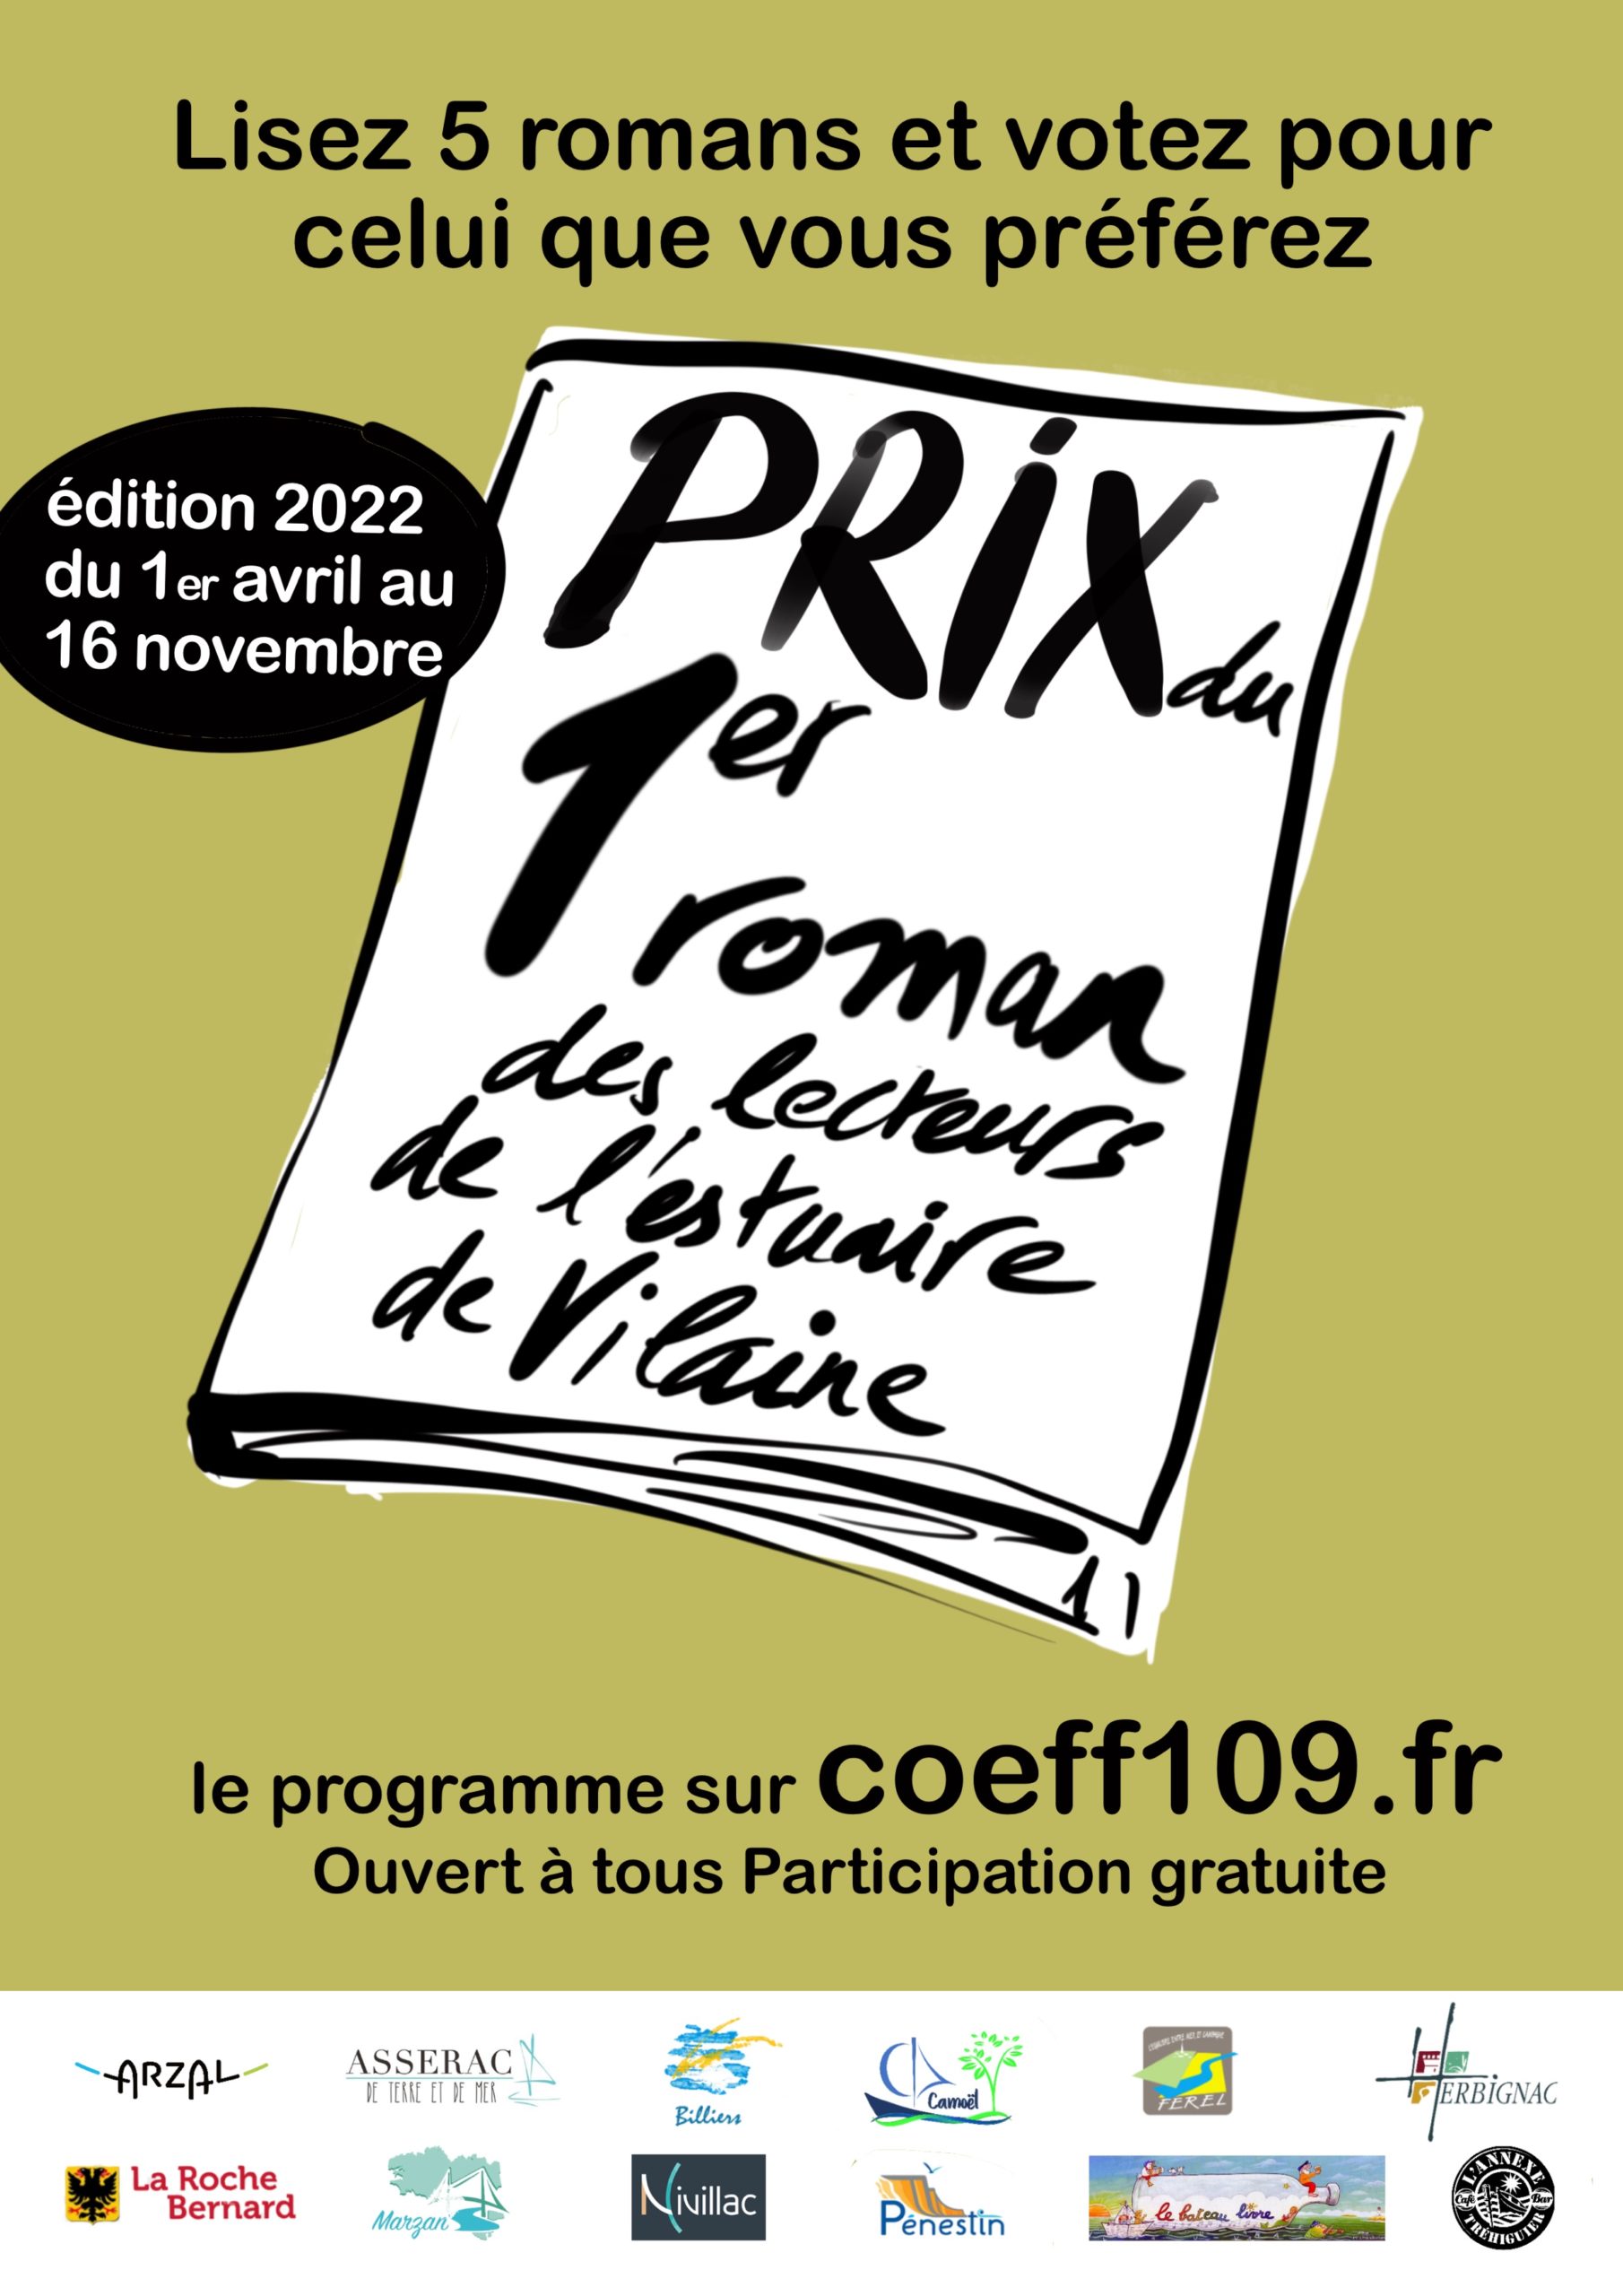 Edition 2022 - 4ème Prix du 1er roman des lecteurs de l'estuaire de Vilaine